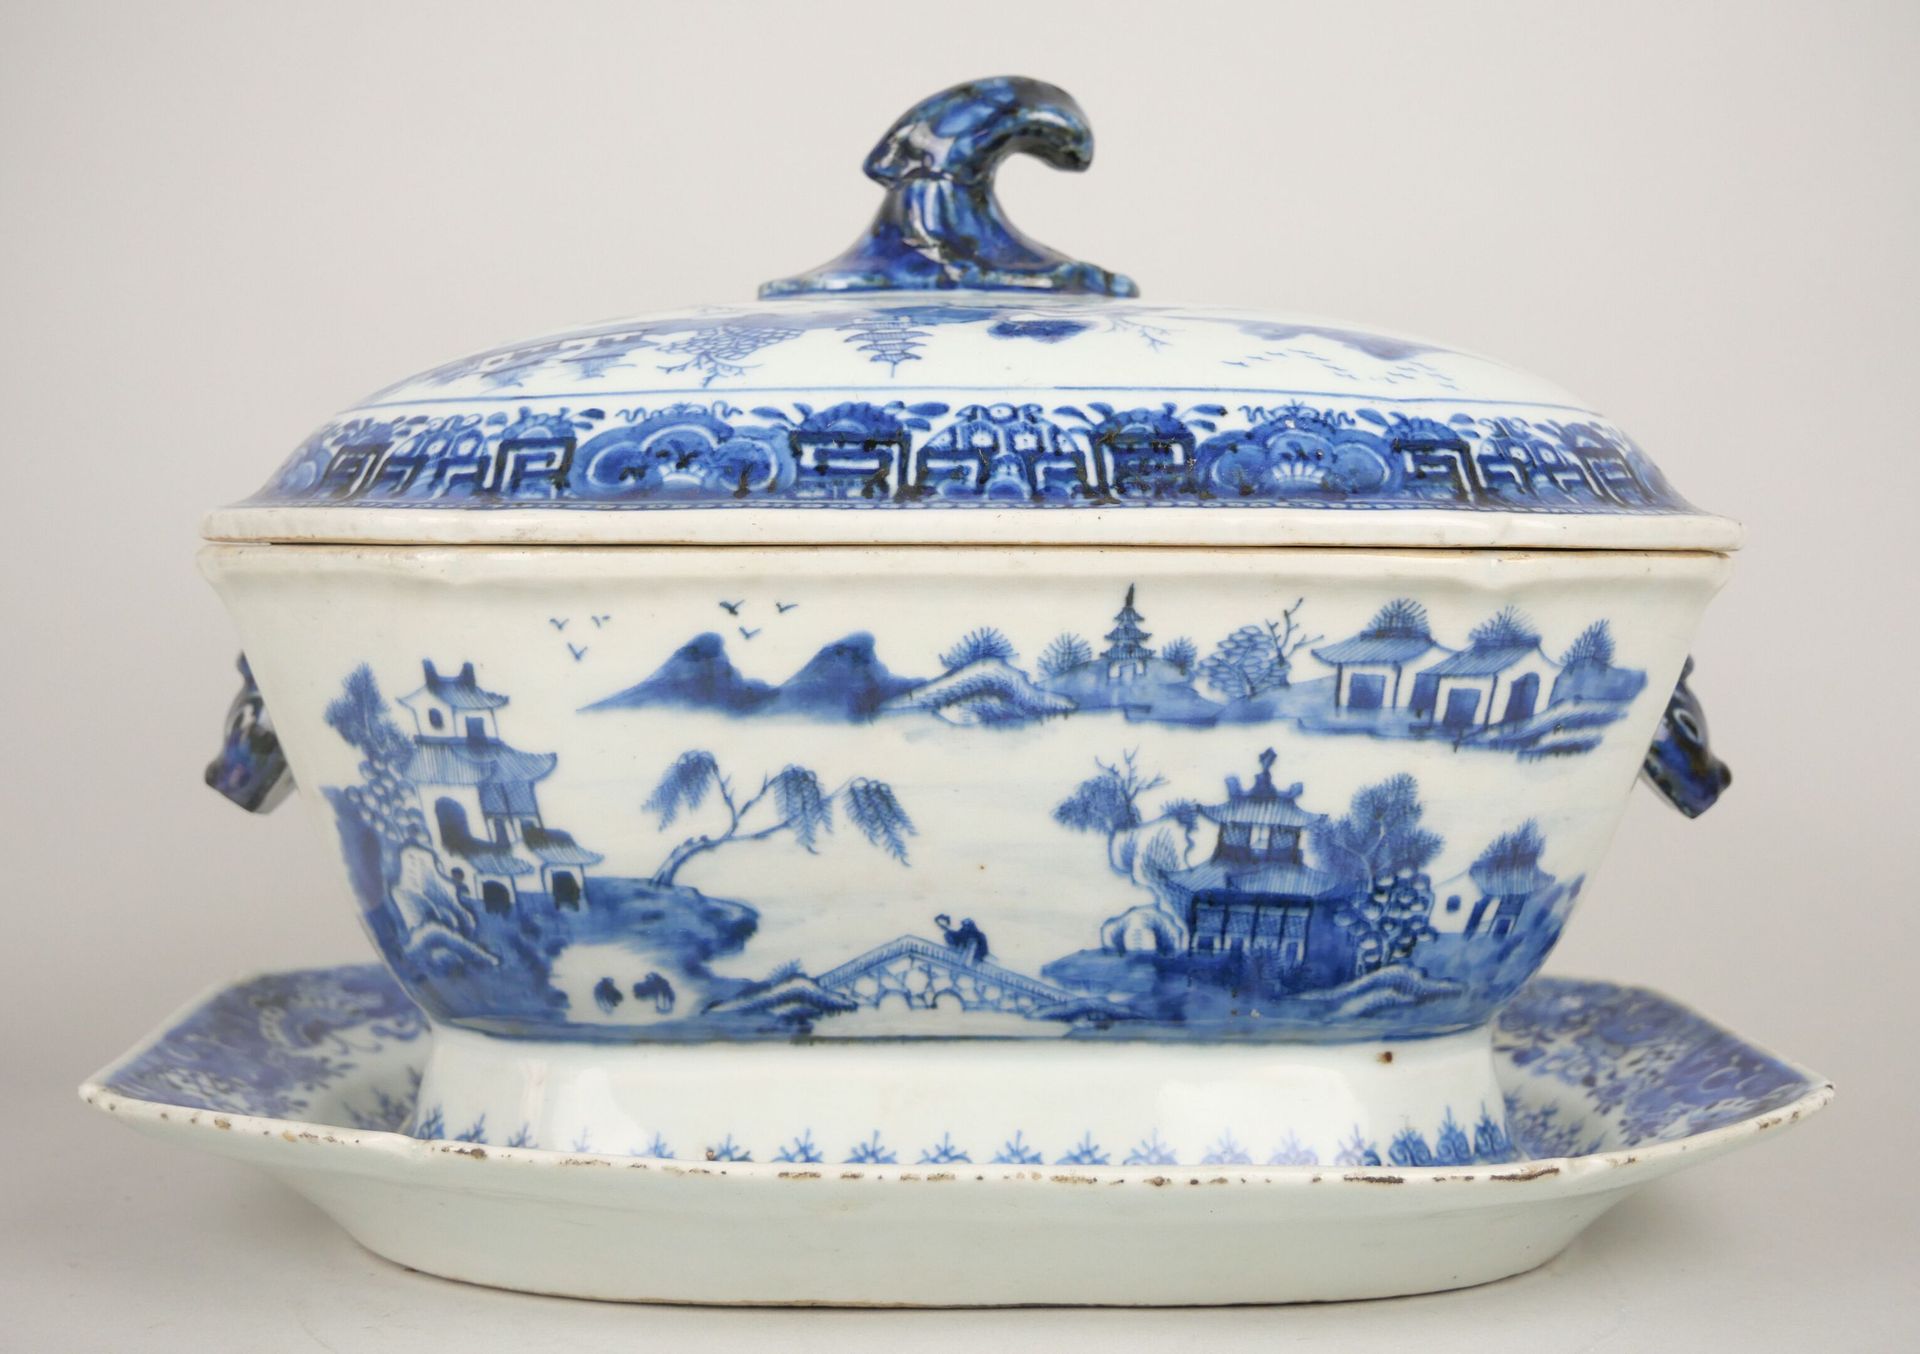 Null 中国（印度公司）:

瓷质盖碗和其展示架，蓝色单色装饰。

18世纪时期。

24 x 33 x 24厘米。



专家：MB艺术专家--摩根-布莱斯&hellip;